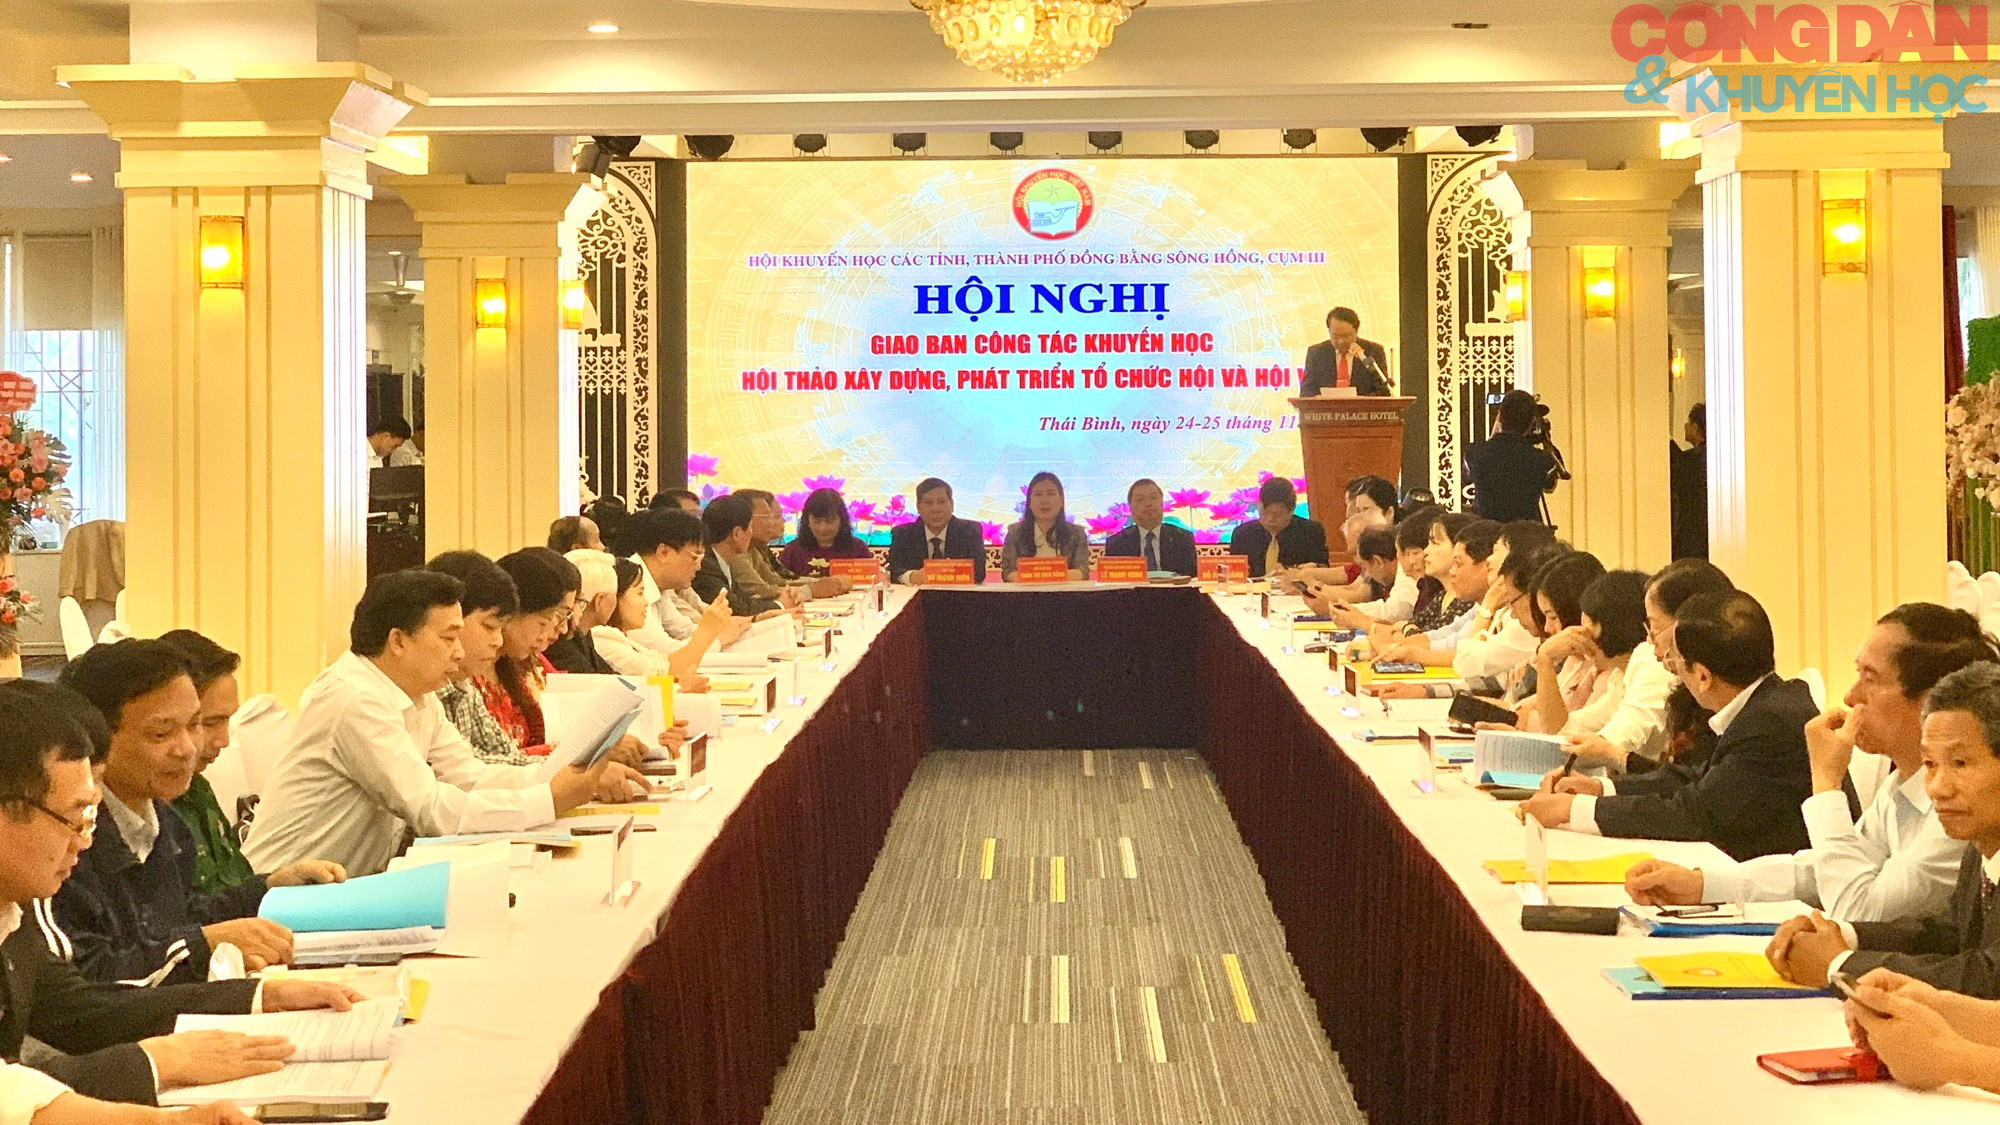 Hội Khuyến học các tỉnh, thành phố Đồng bằng sông Hồng tổ chức Hội nghị giao ban công tác khuyến học - Ảnh 1.